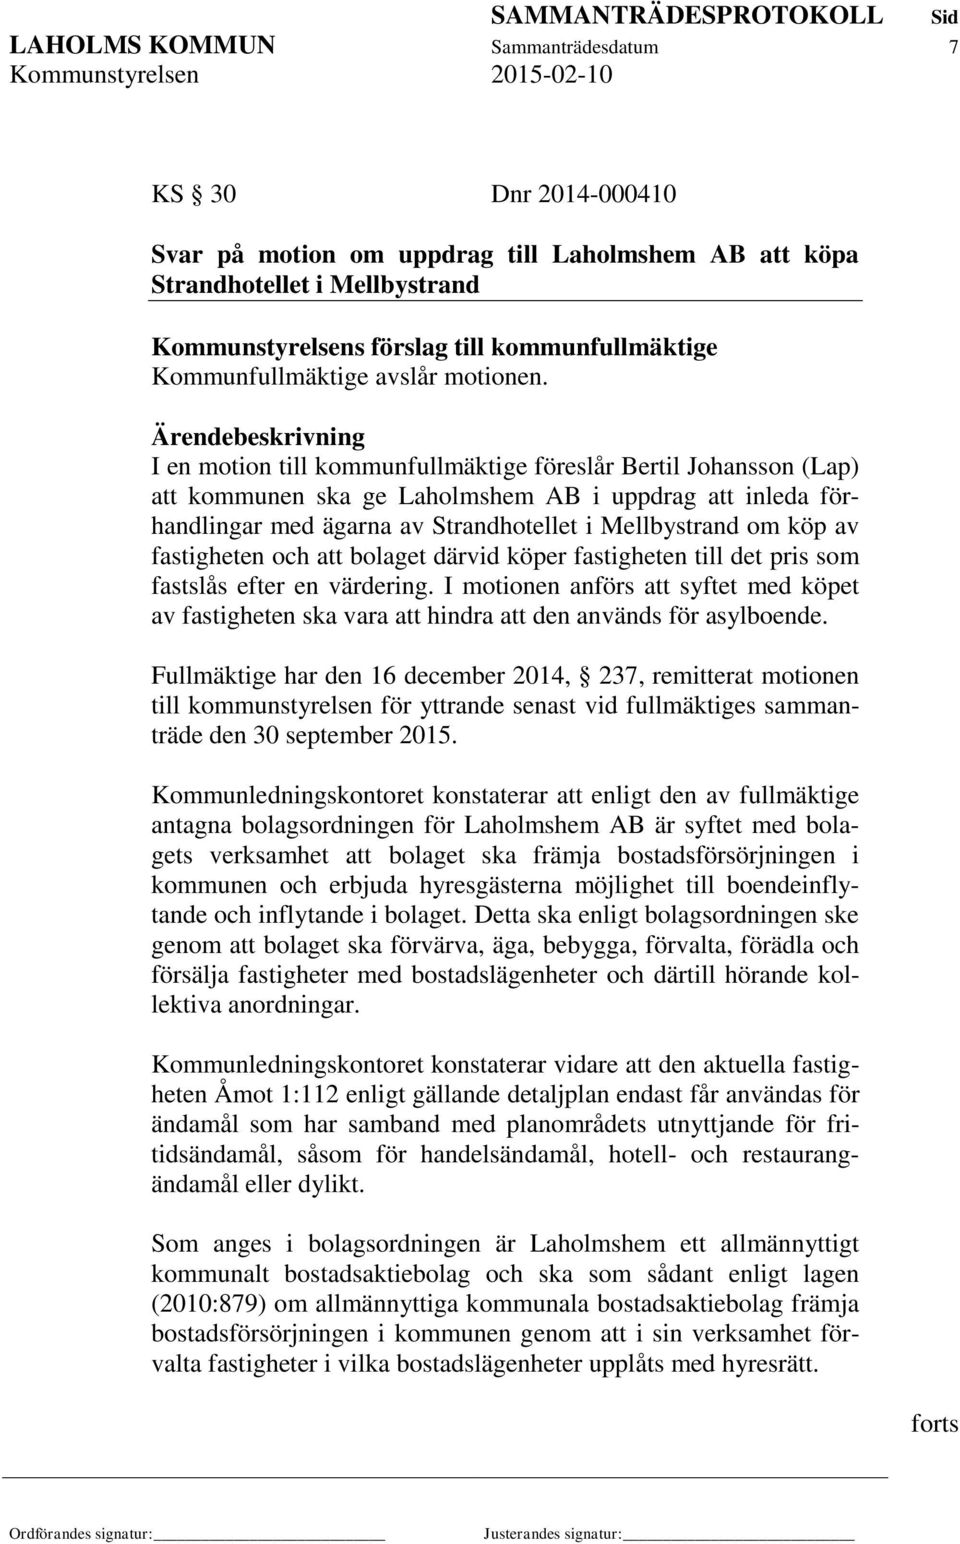 I en motion till kommunfullmäktige föreslår Bertil Johansson (Lap) att kommunen ska ge Laholmshem AB i uppdrag att inleda förhandlingar med ägarna av Strandhotellet i Mellbystrand om köp av